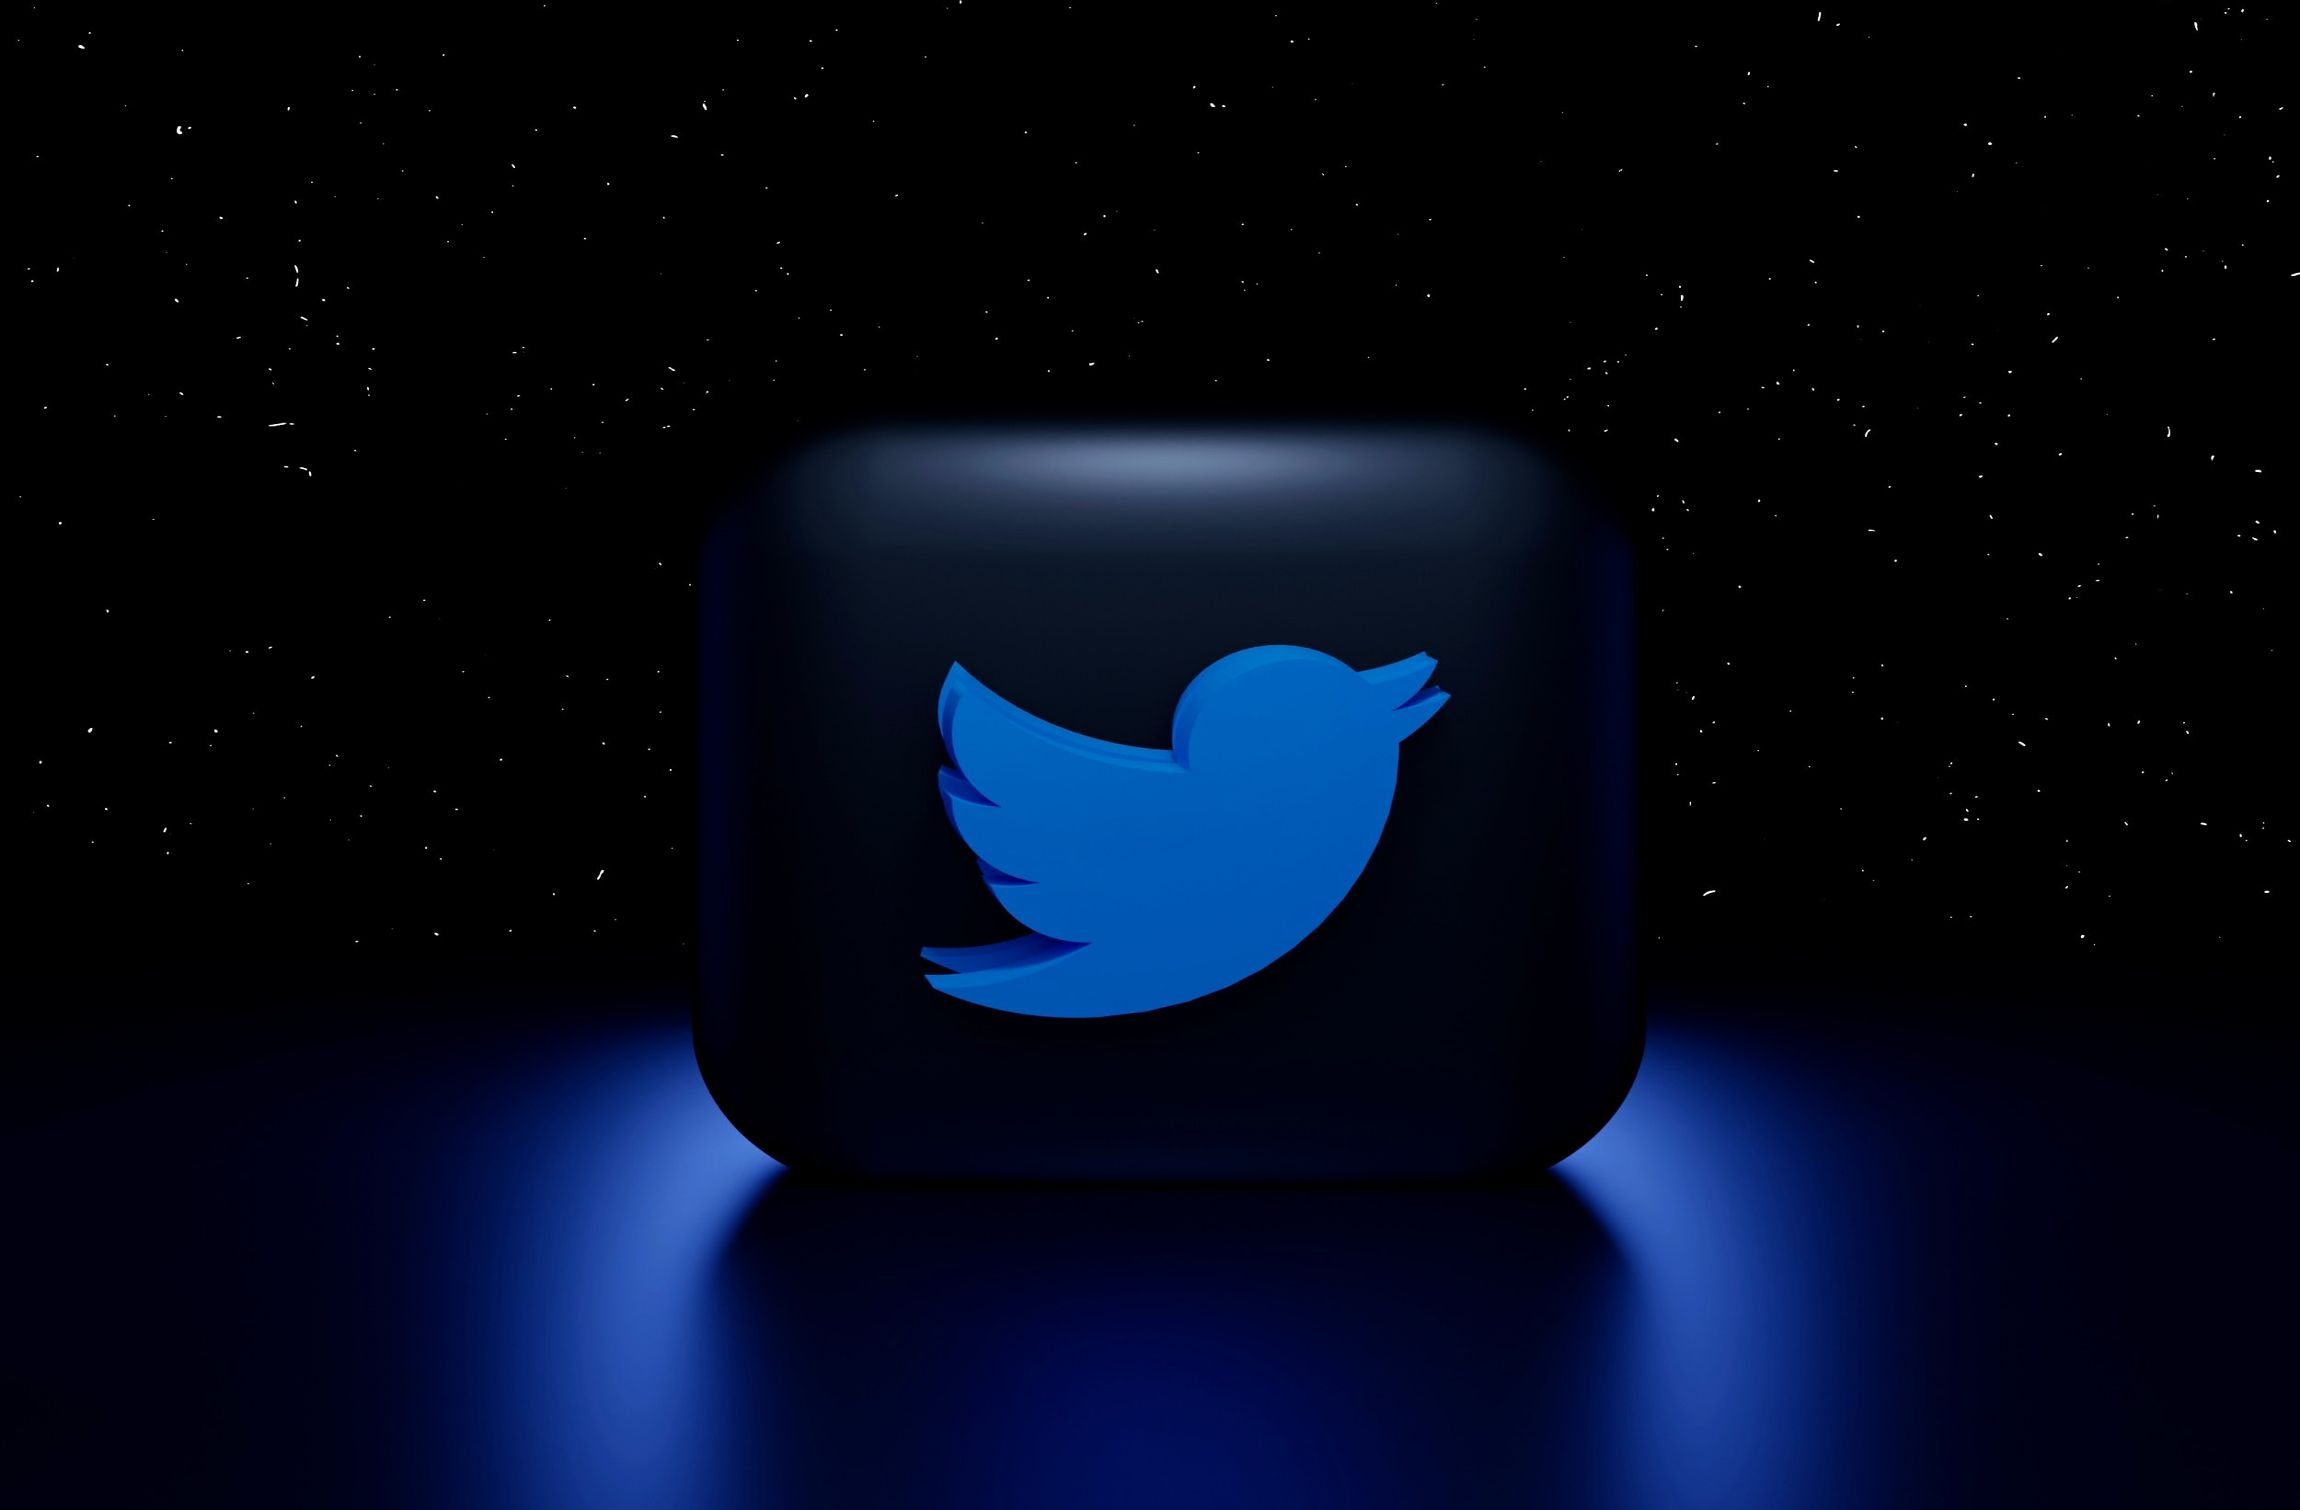 Imagem do logotipo do Twitter em um fundo preto